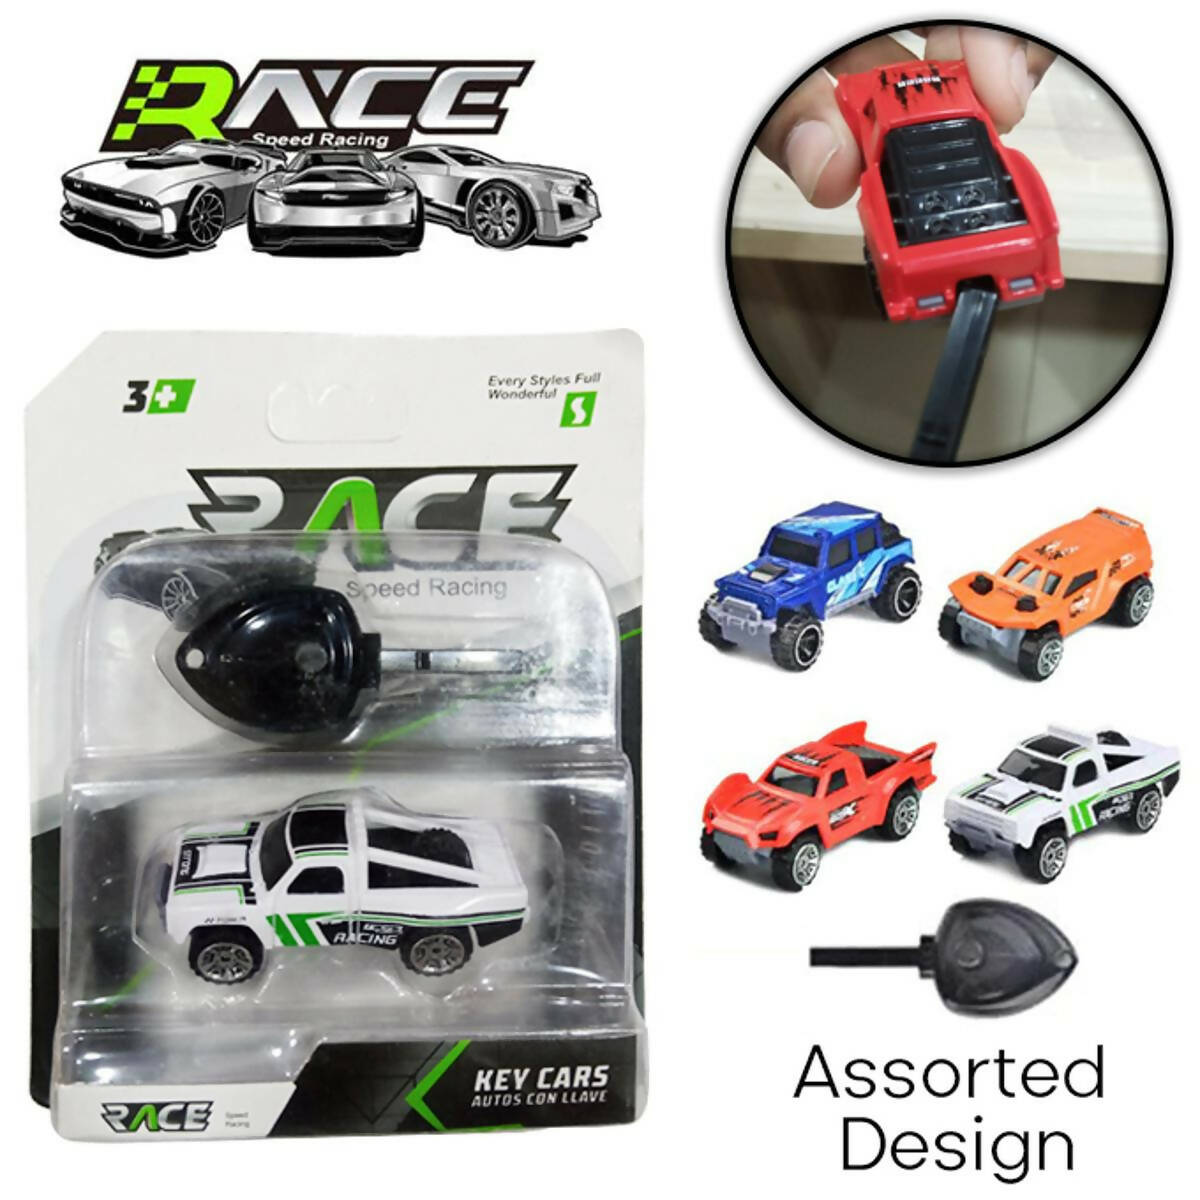 Race Speed Racing Key Power Die Cast Car